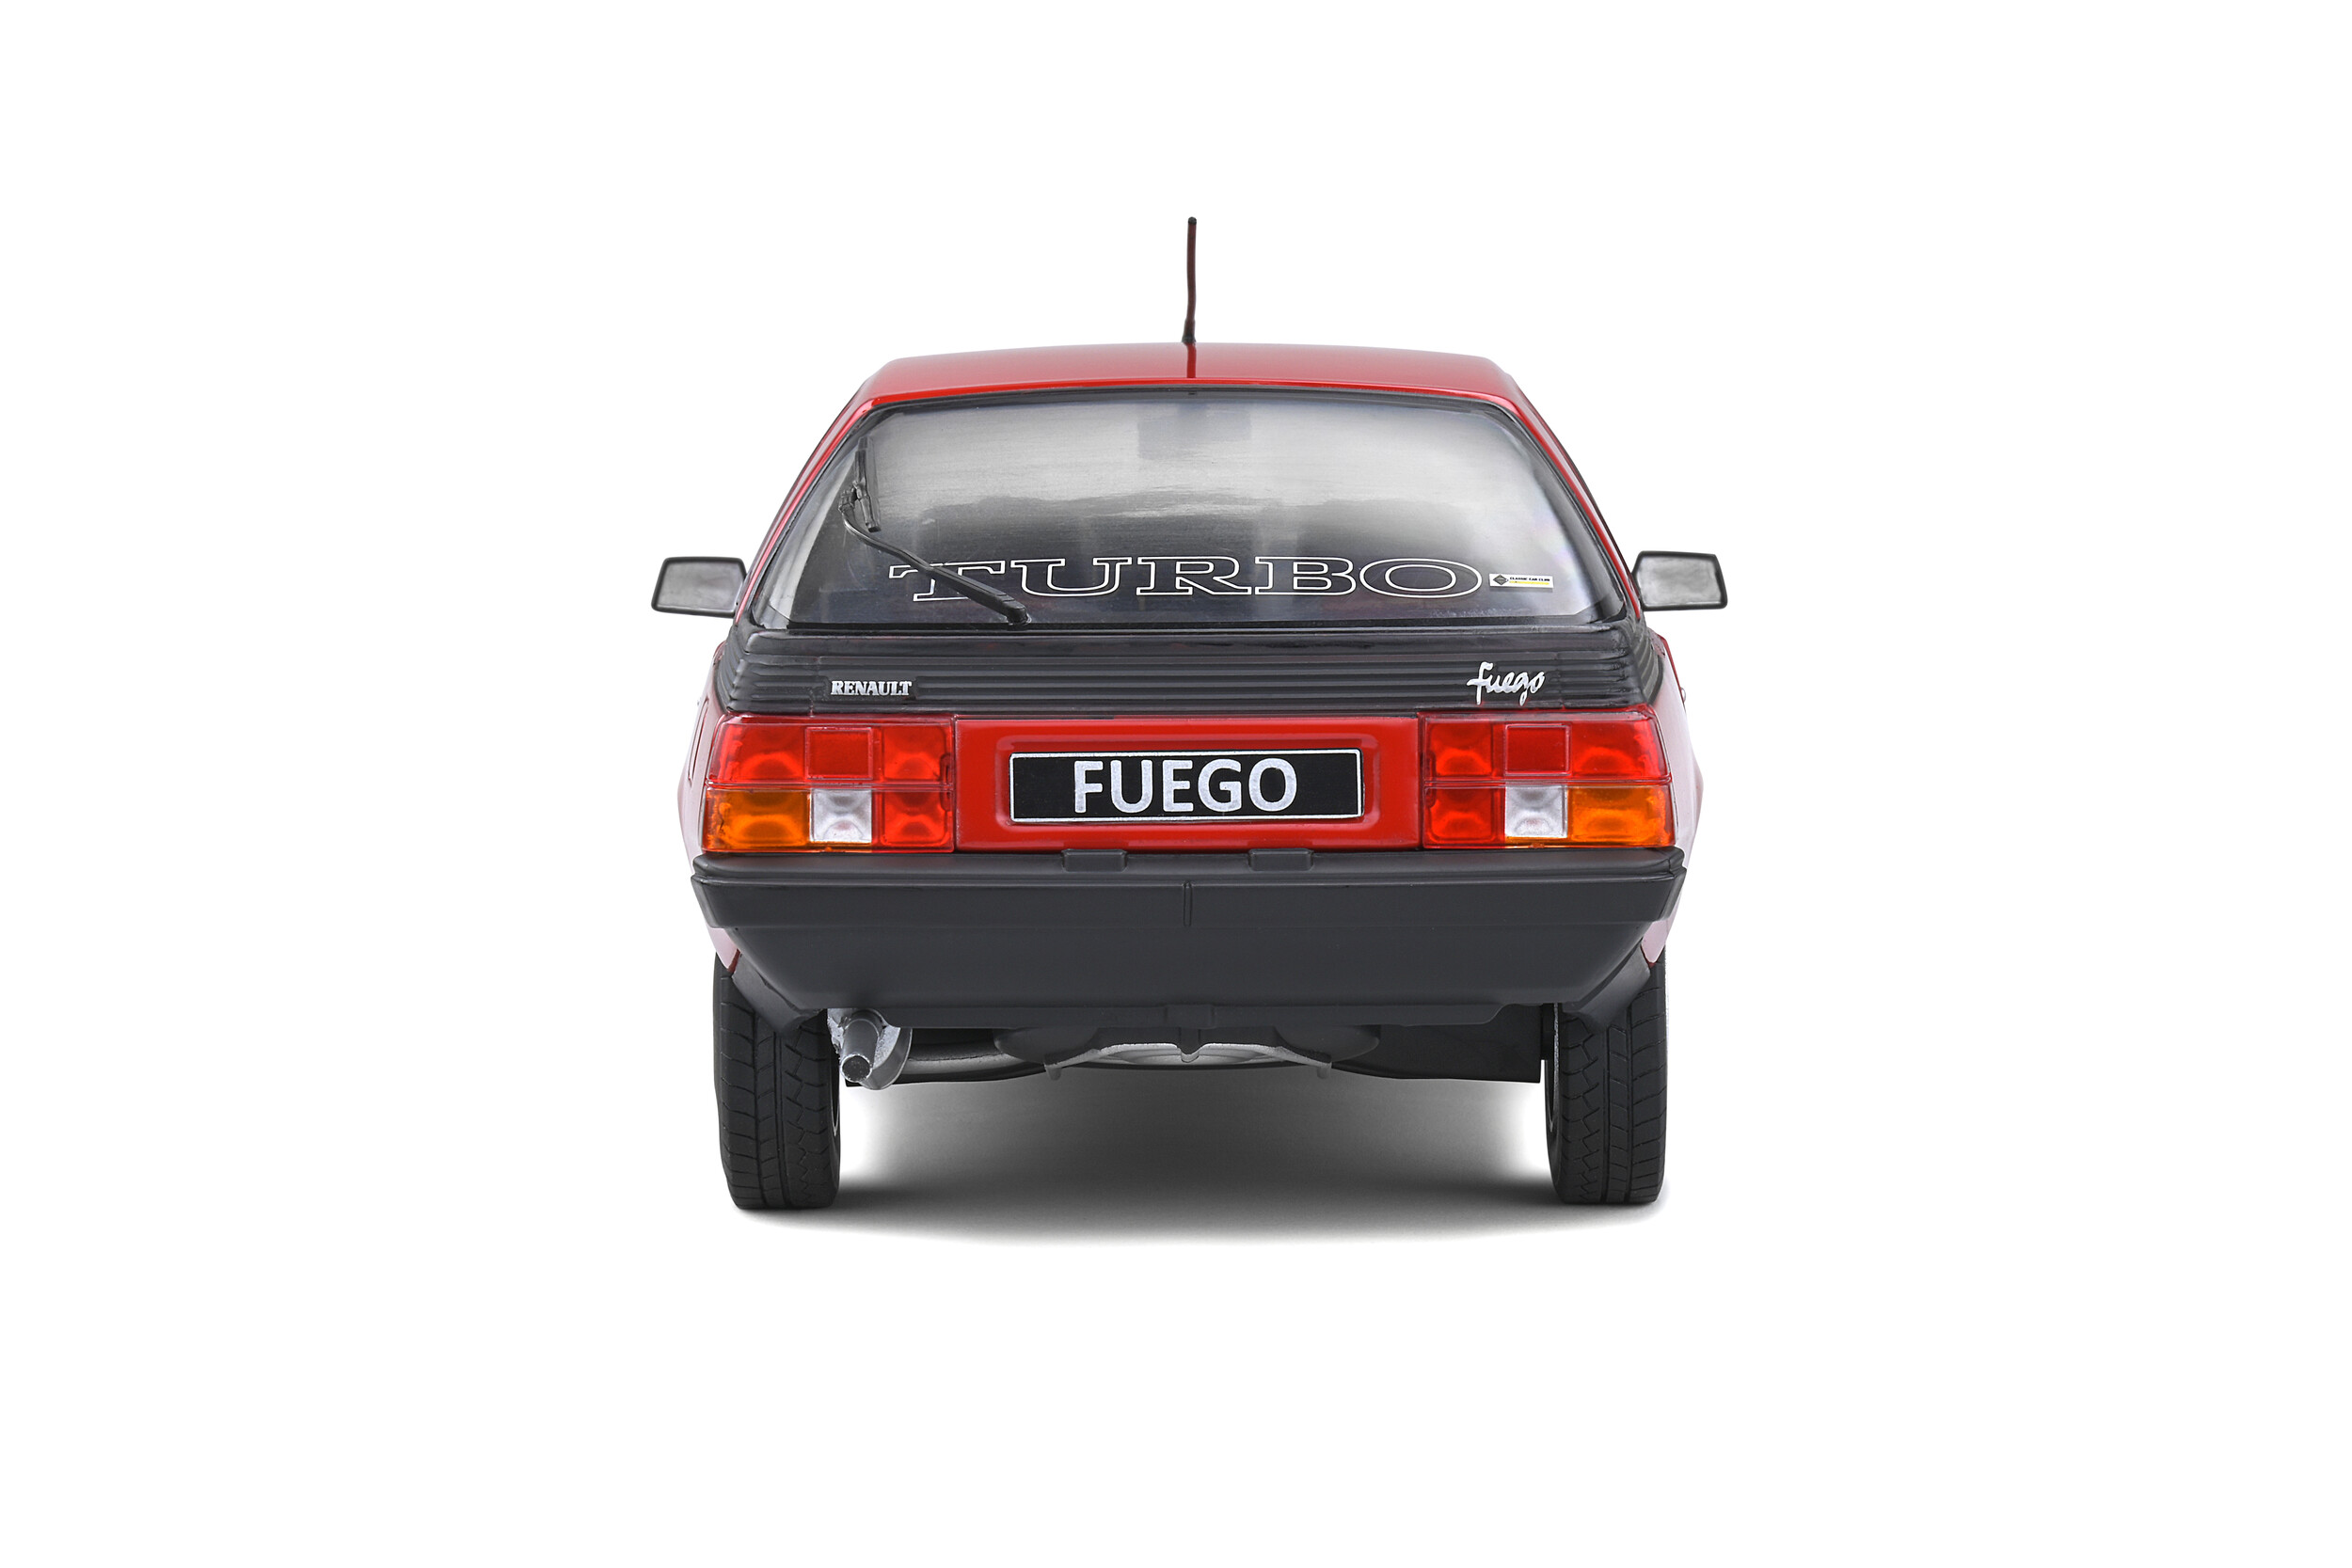 Renault Fuego Turbo - 1980 - Solido